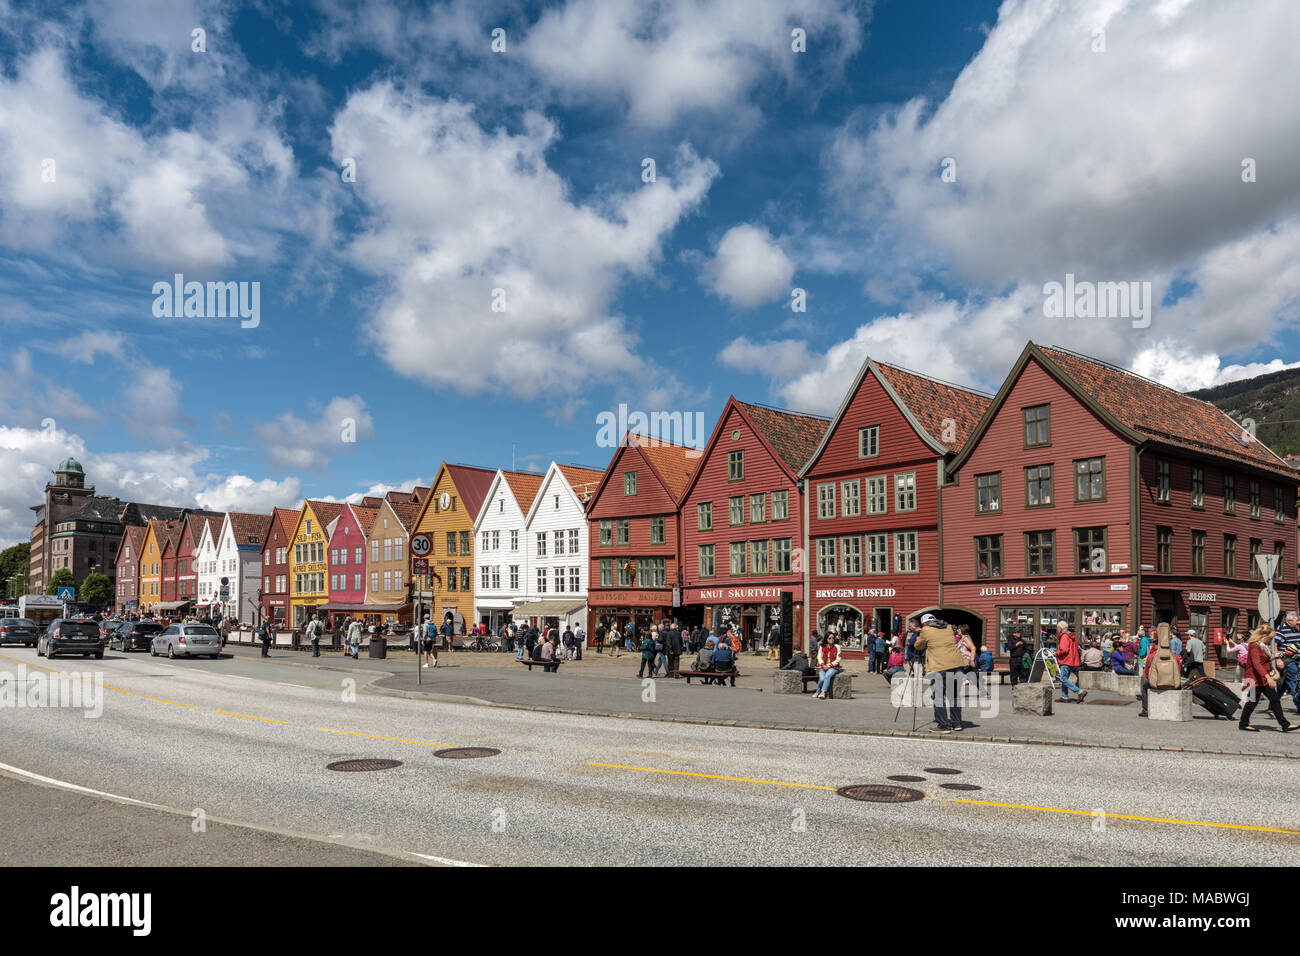 Bergen è molo vecchio distretto, Bryggen, magazzino in legno facciate in Hanseatic stili e colori, Norvegia Foto Stock